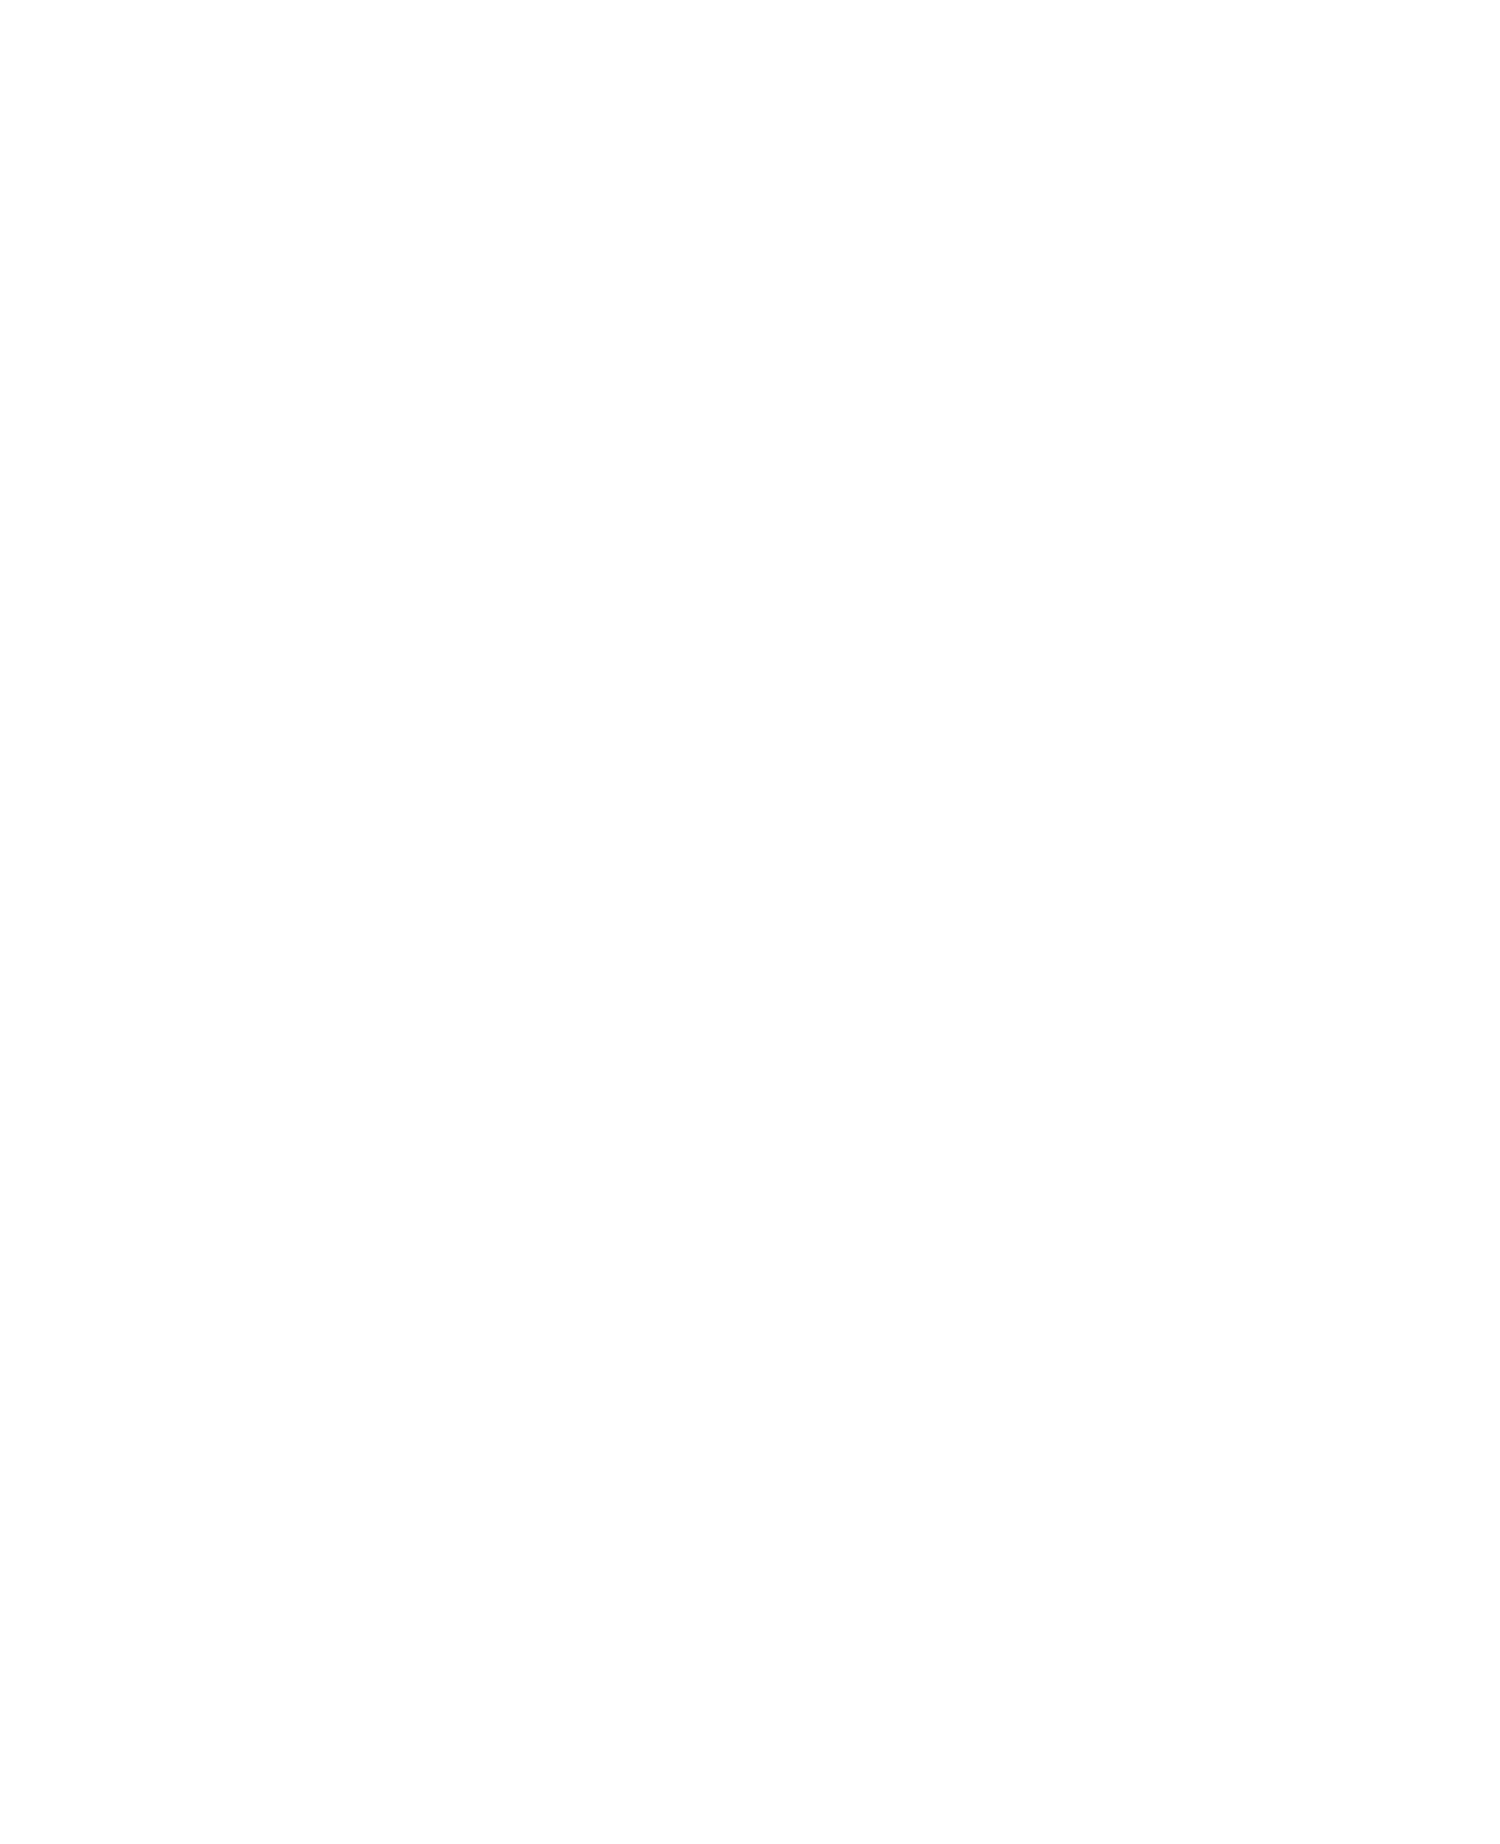 www.treehouseonthefly.com